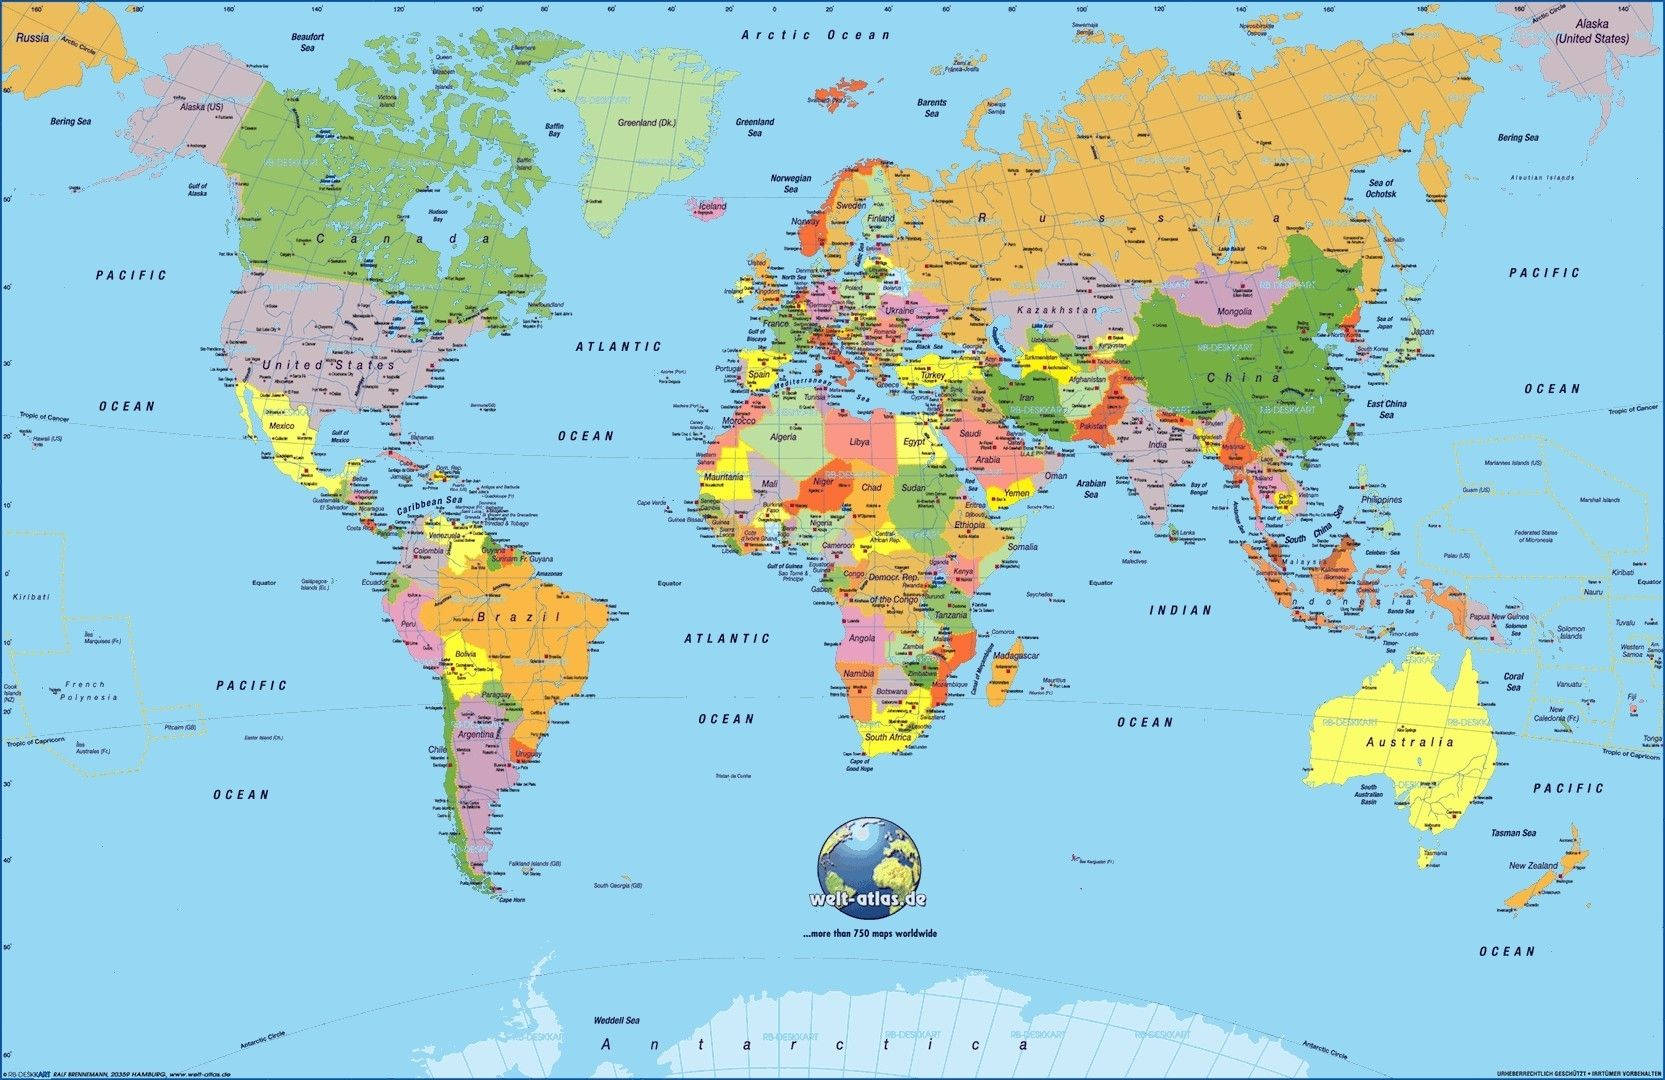 Political World Map Wallpaper